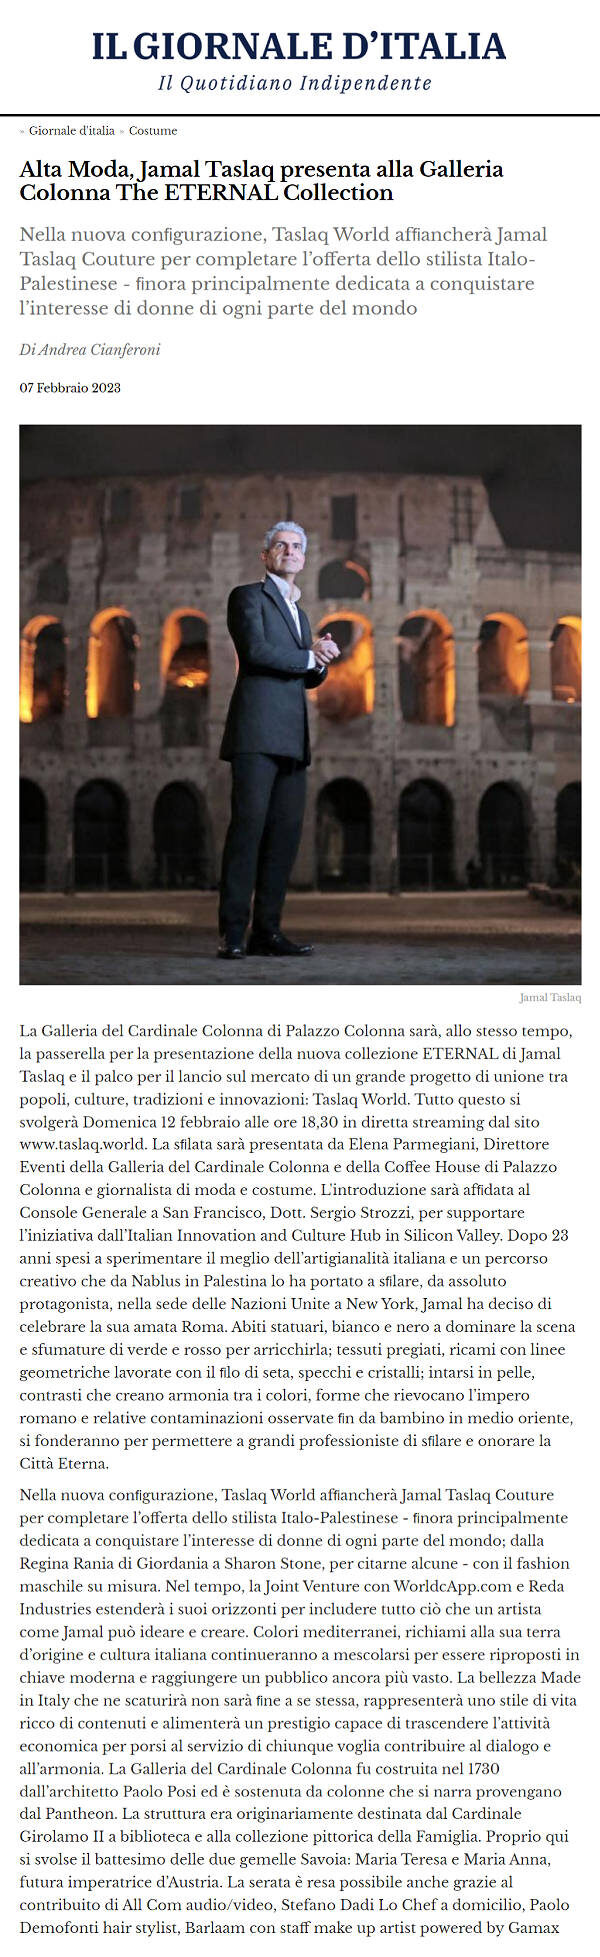 Alta Moda, Jamal Taslaq presenta alla Galleria Colonna The ETERNAL Collection, Il Giornale d'Italia, 7 febbraio 2023